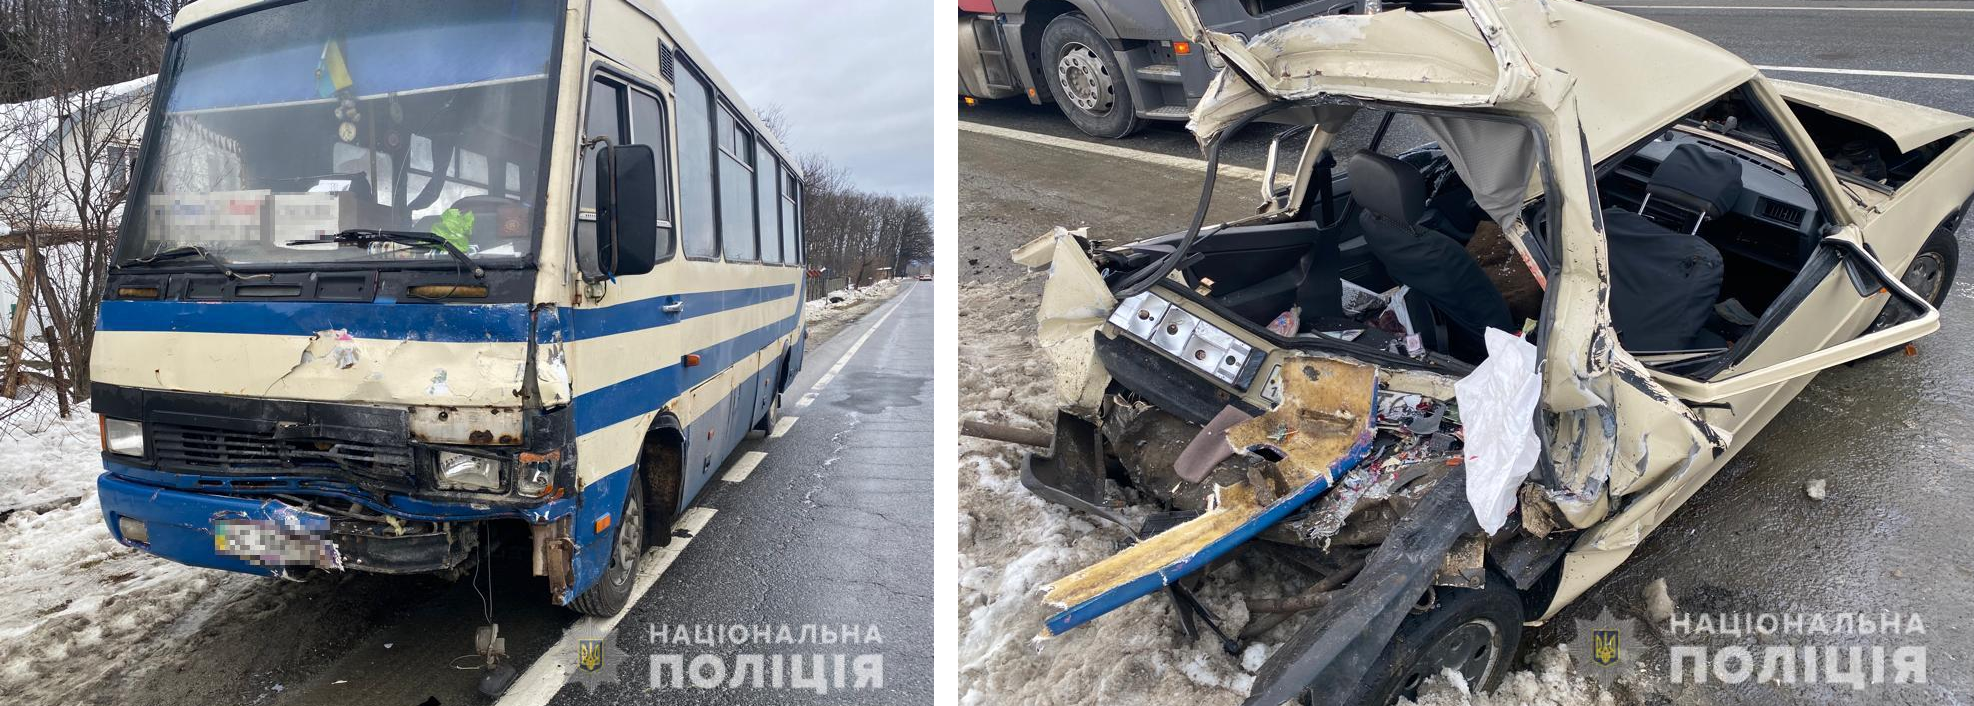 В аварии пострадали 4 человека. Источник: lv.npu.gov.ua